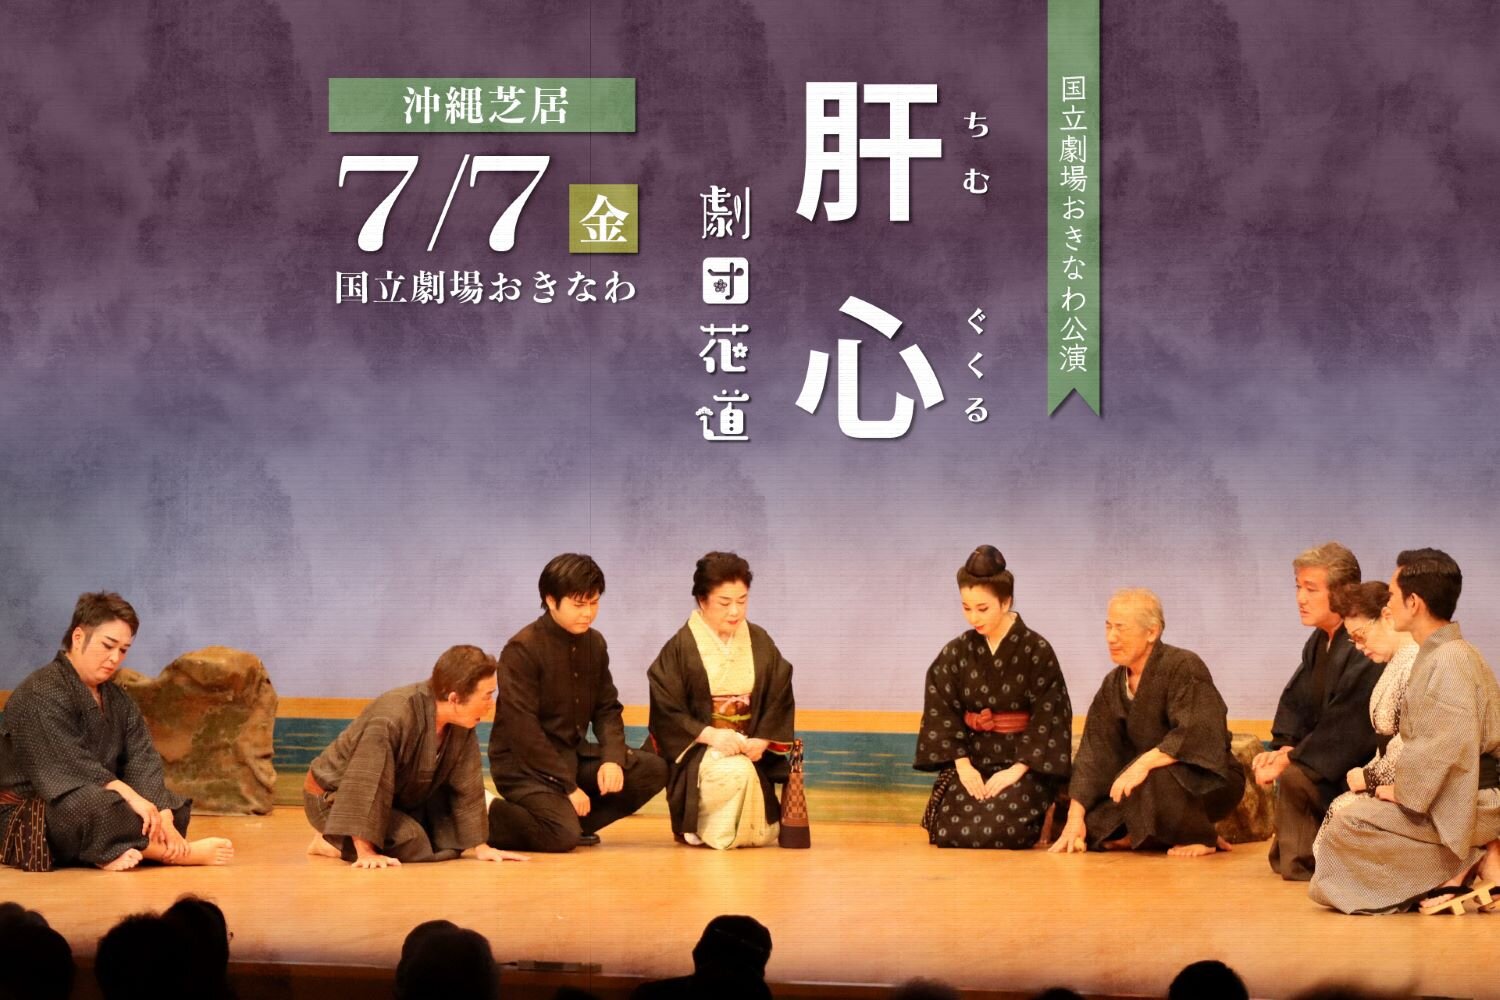 【公演レポート】7月7日 劇団花道「肝心」掲載しました。